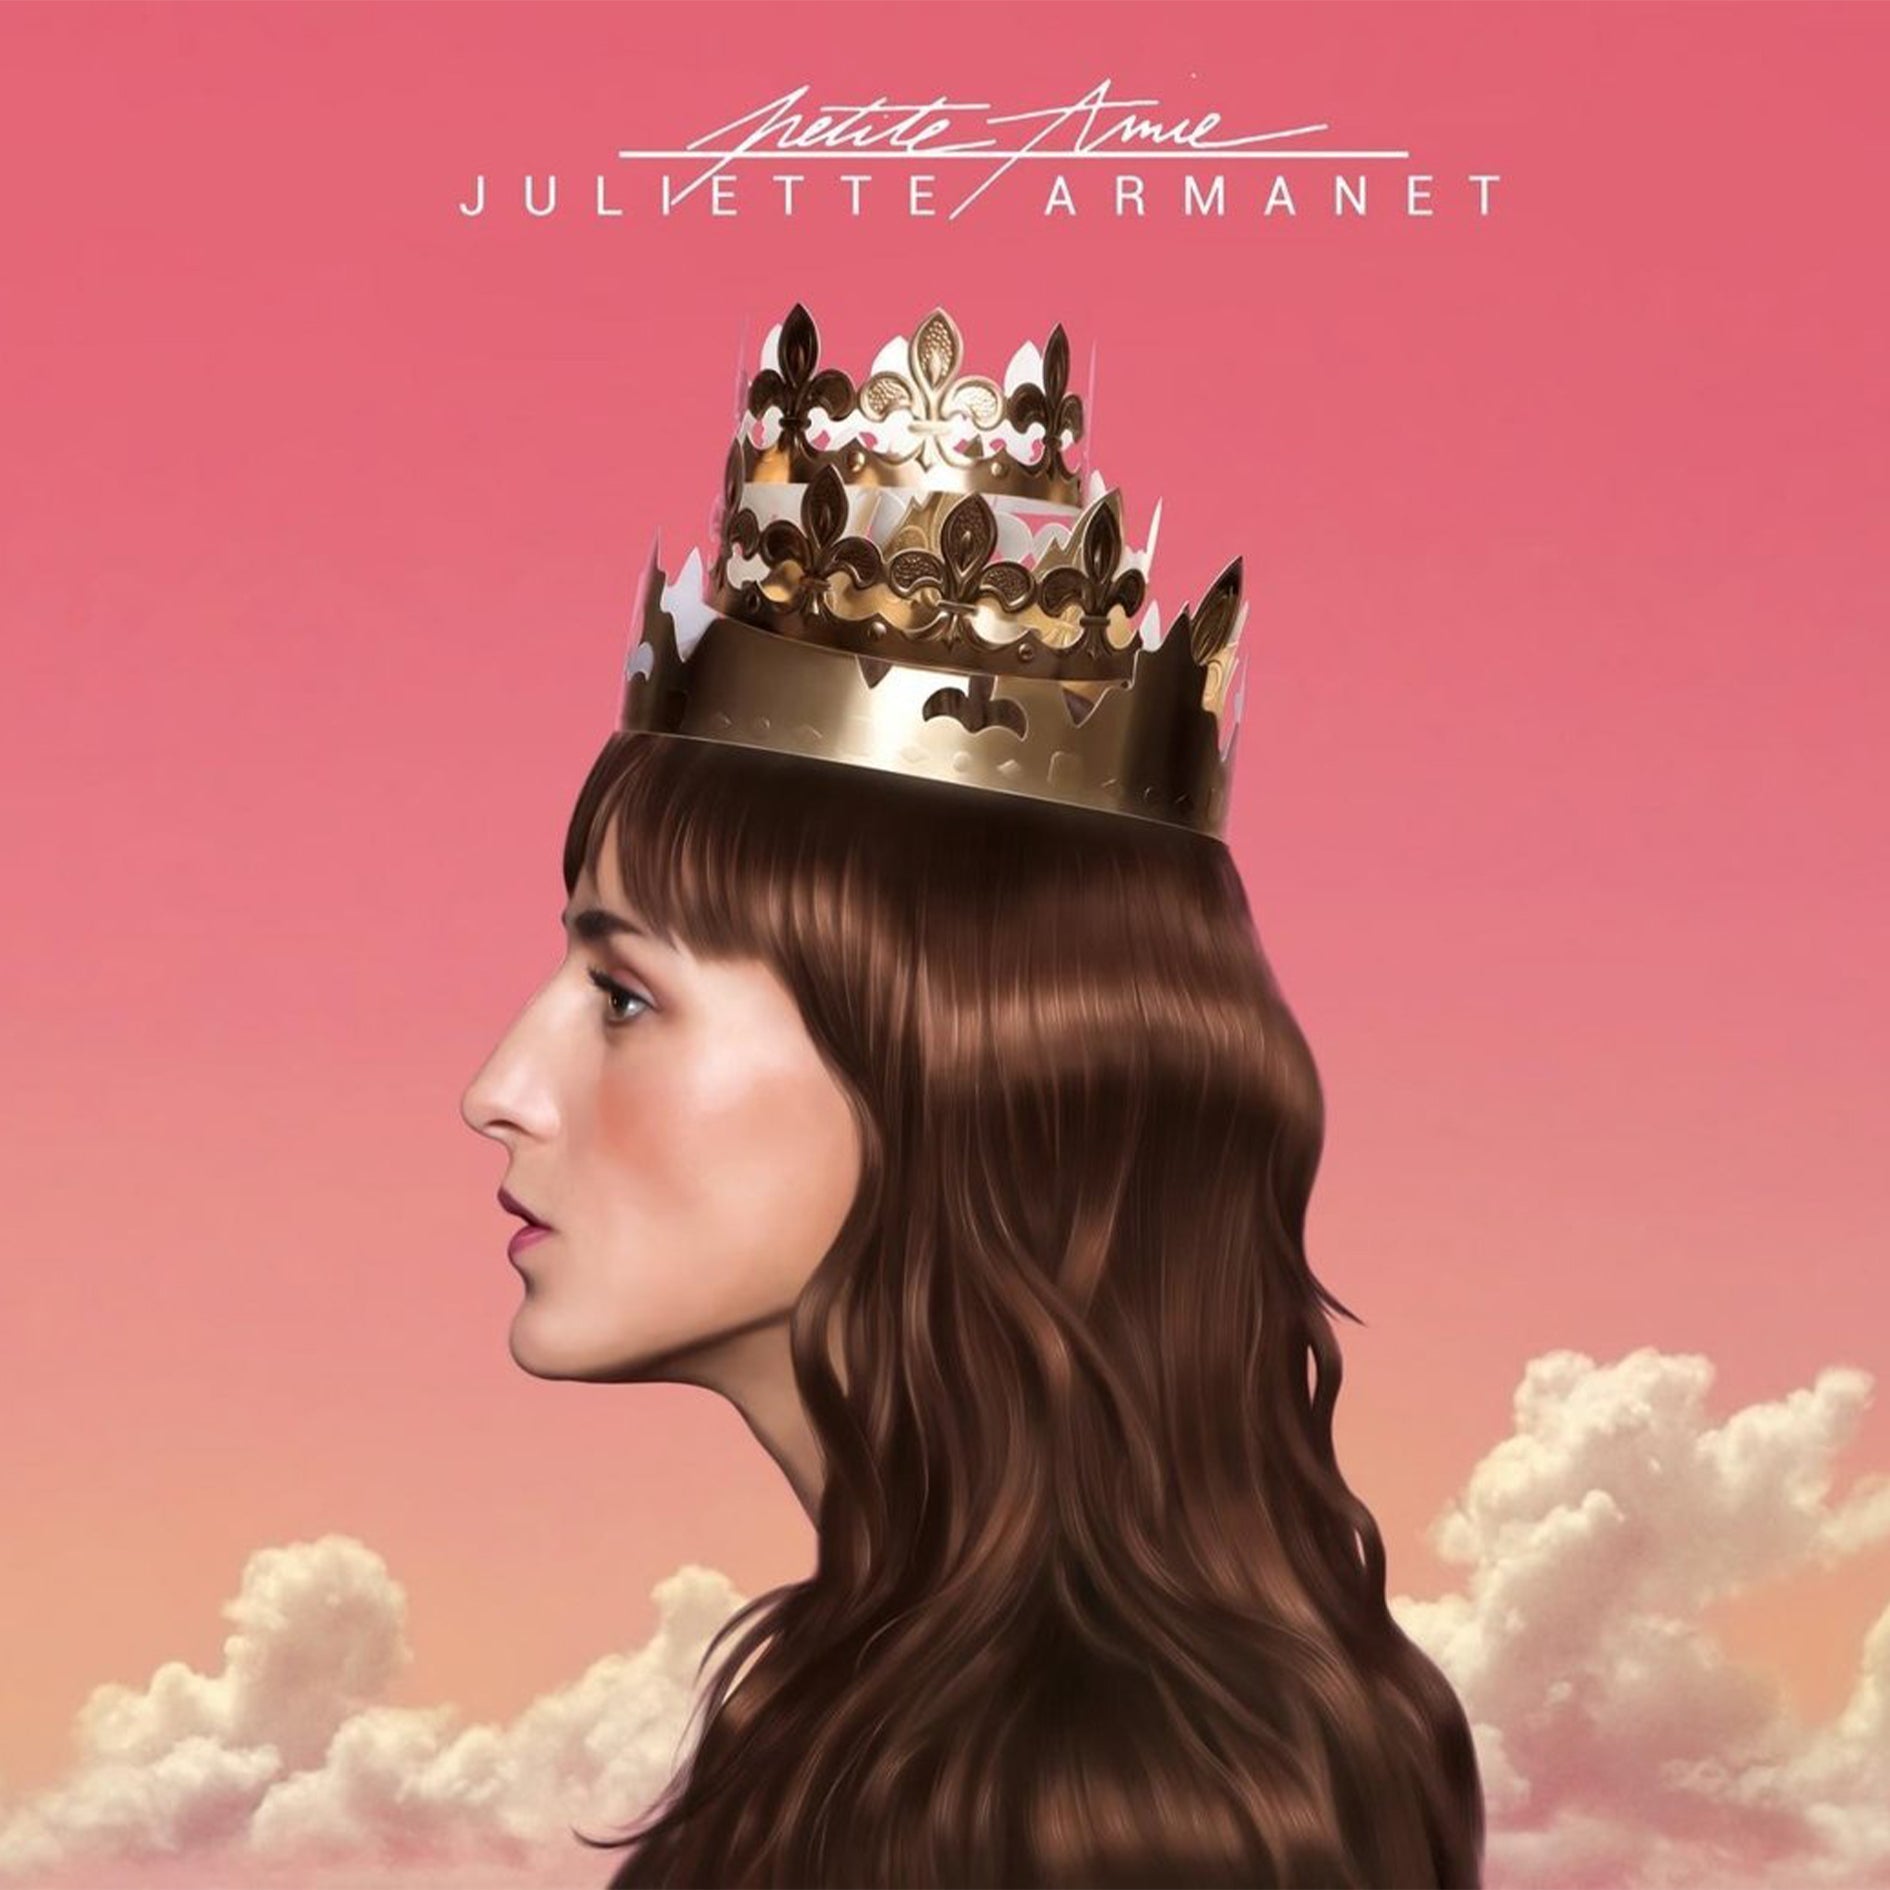 Juliette Armanet - Petite Amie - Vinyle